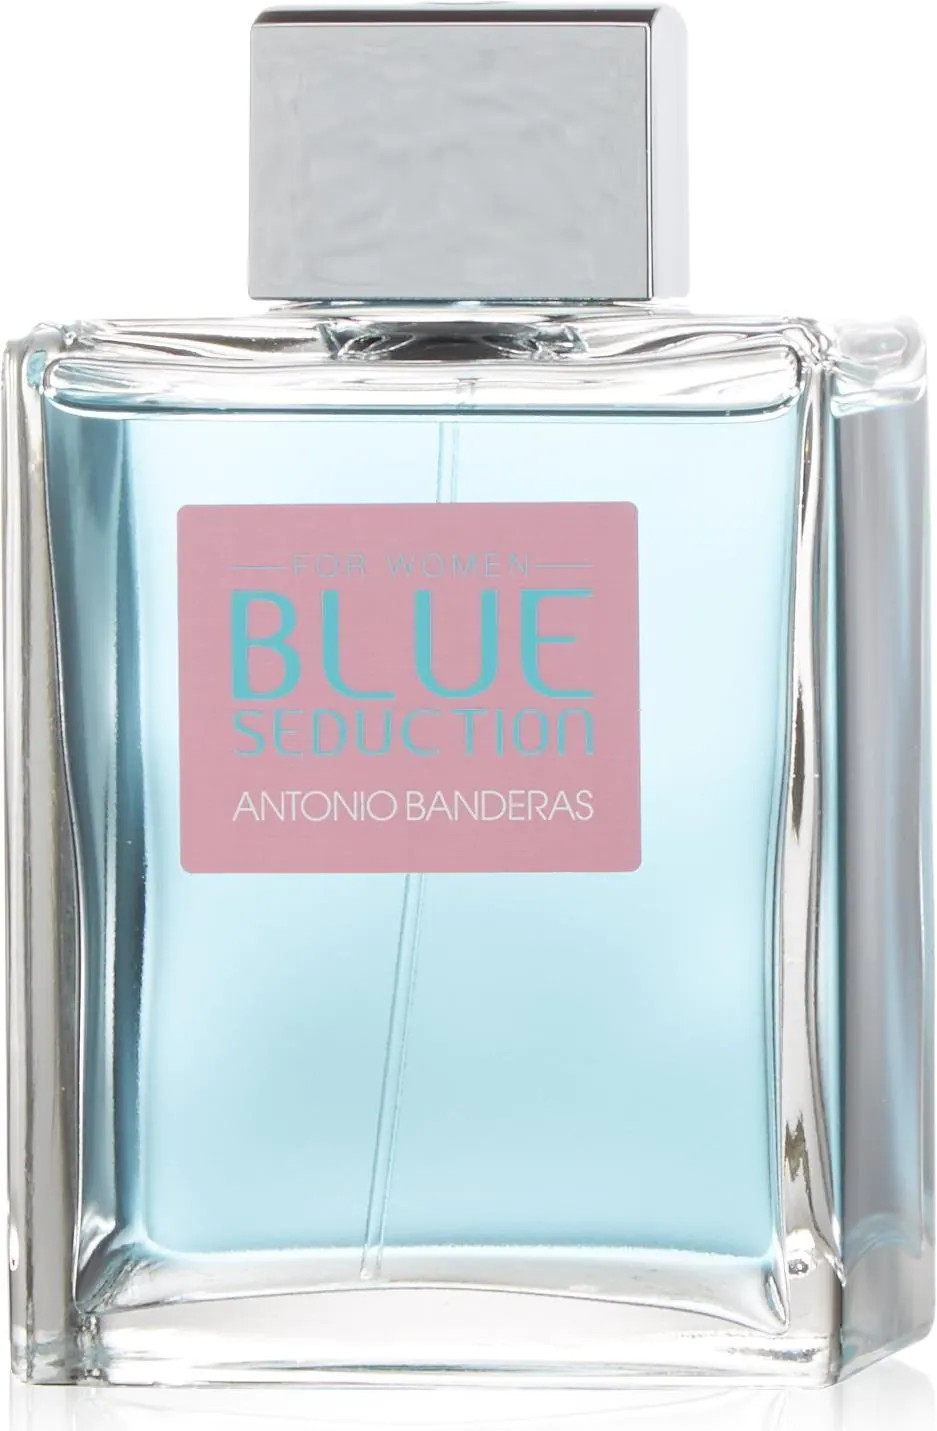 Antonio Banderas blue seduction